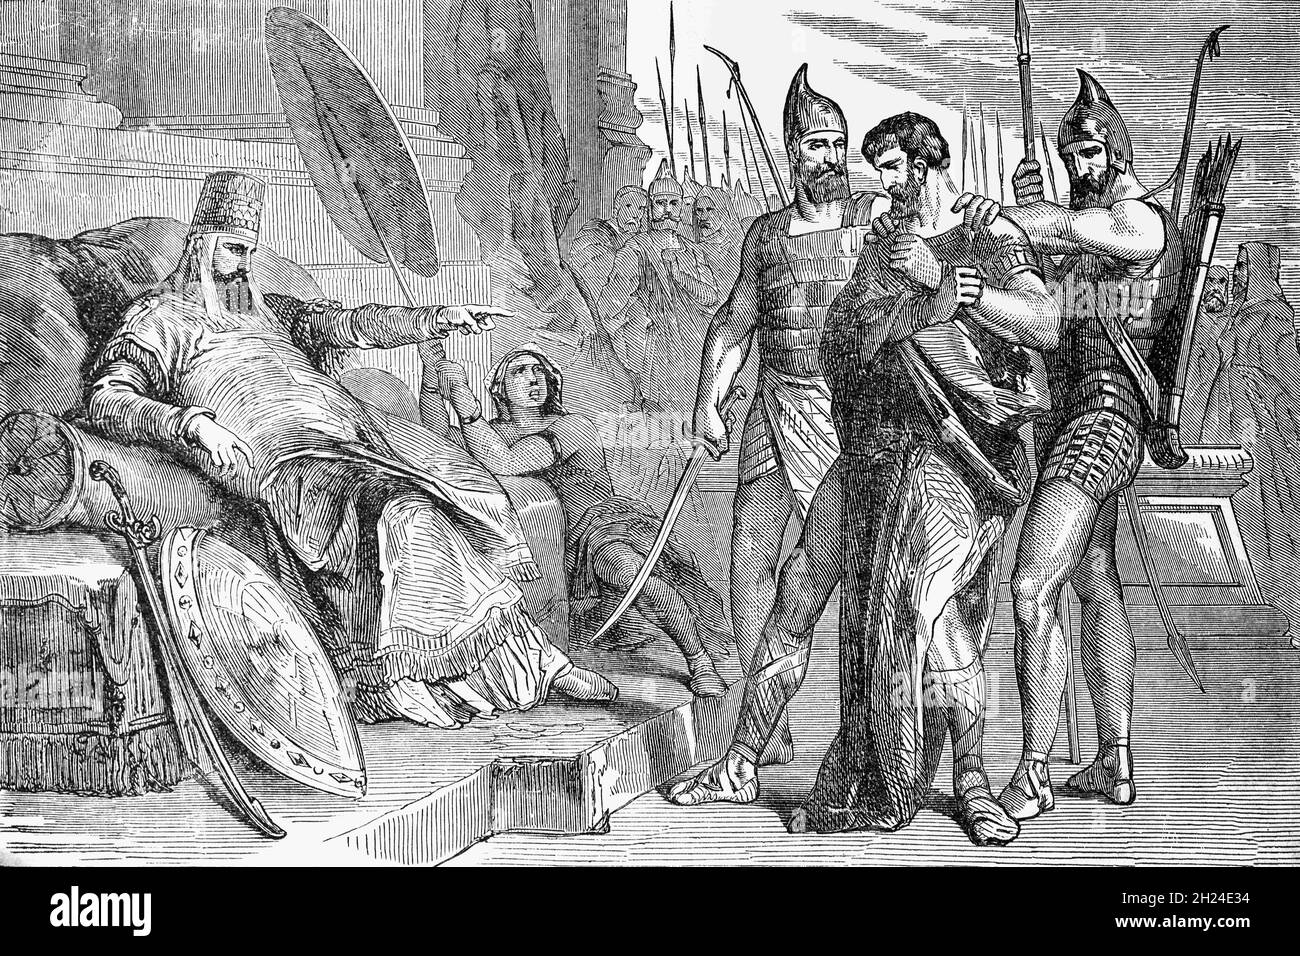 Un'illustrazione di fine XIX secolo del re Sedekia, il ventesimo e ultimo re di Giuda davanti al re Nebucadnetsar II di Babilonia. Sedekia era stato installato come re di Giuda da Nebucadnetsar II, re di Babilonia, dopo un assedio di Gerusalemme nel 597 a.C., fino alla fine del suo regno, quando Nebucadnetsar riuscì a catturare Gerusalemme. Sedekia e i suoi seguaci tentarono di fuggire, uscendo dalla città, ma furono catturati sulle pianure di Gerico e furono condotti a Ribla, rimanendo prigioniero fino alla morte. Foto Stock